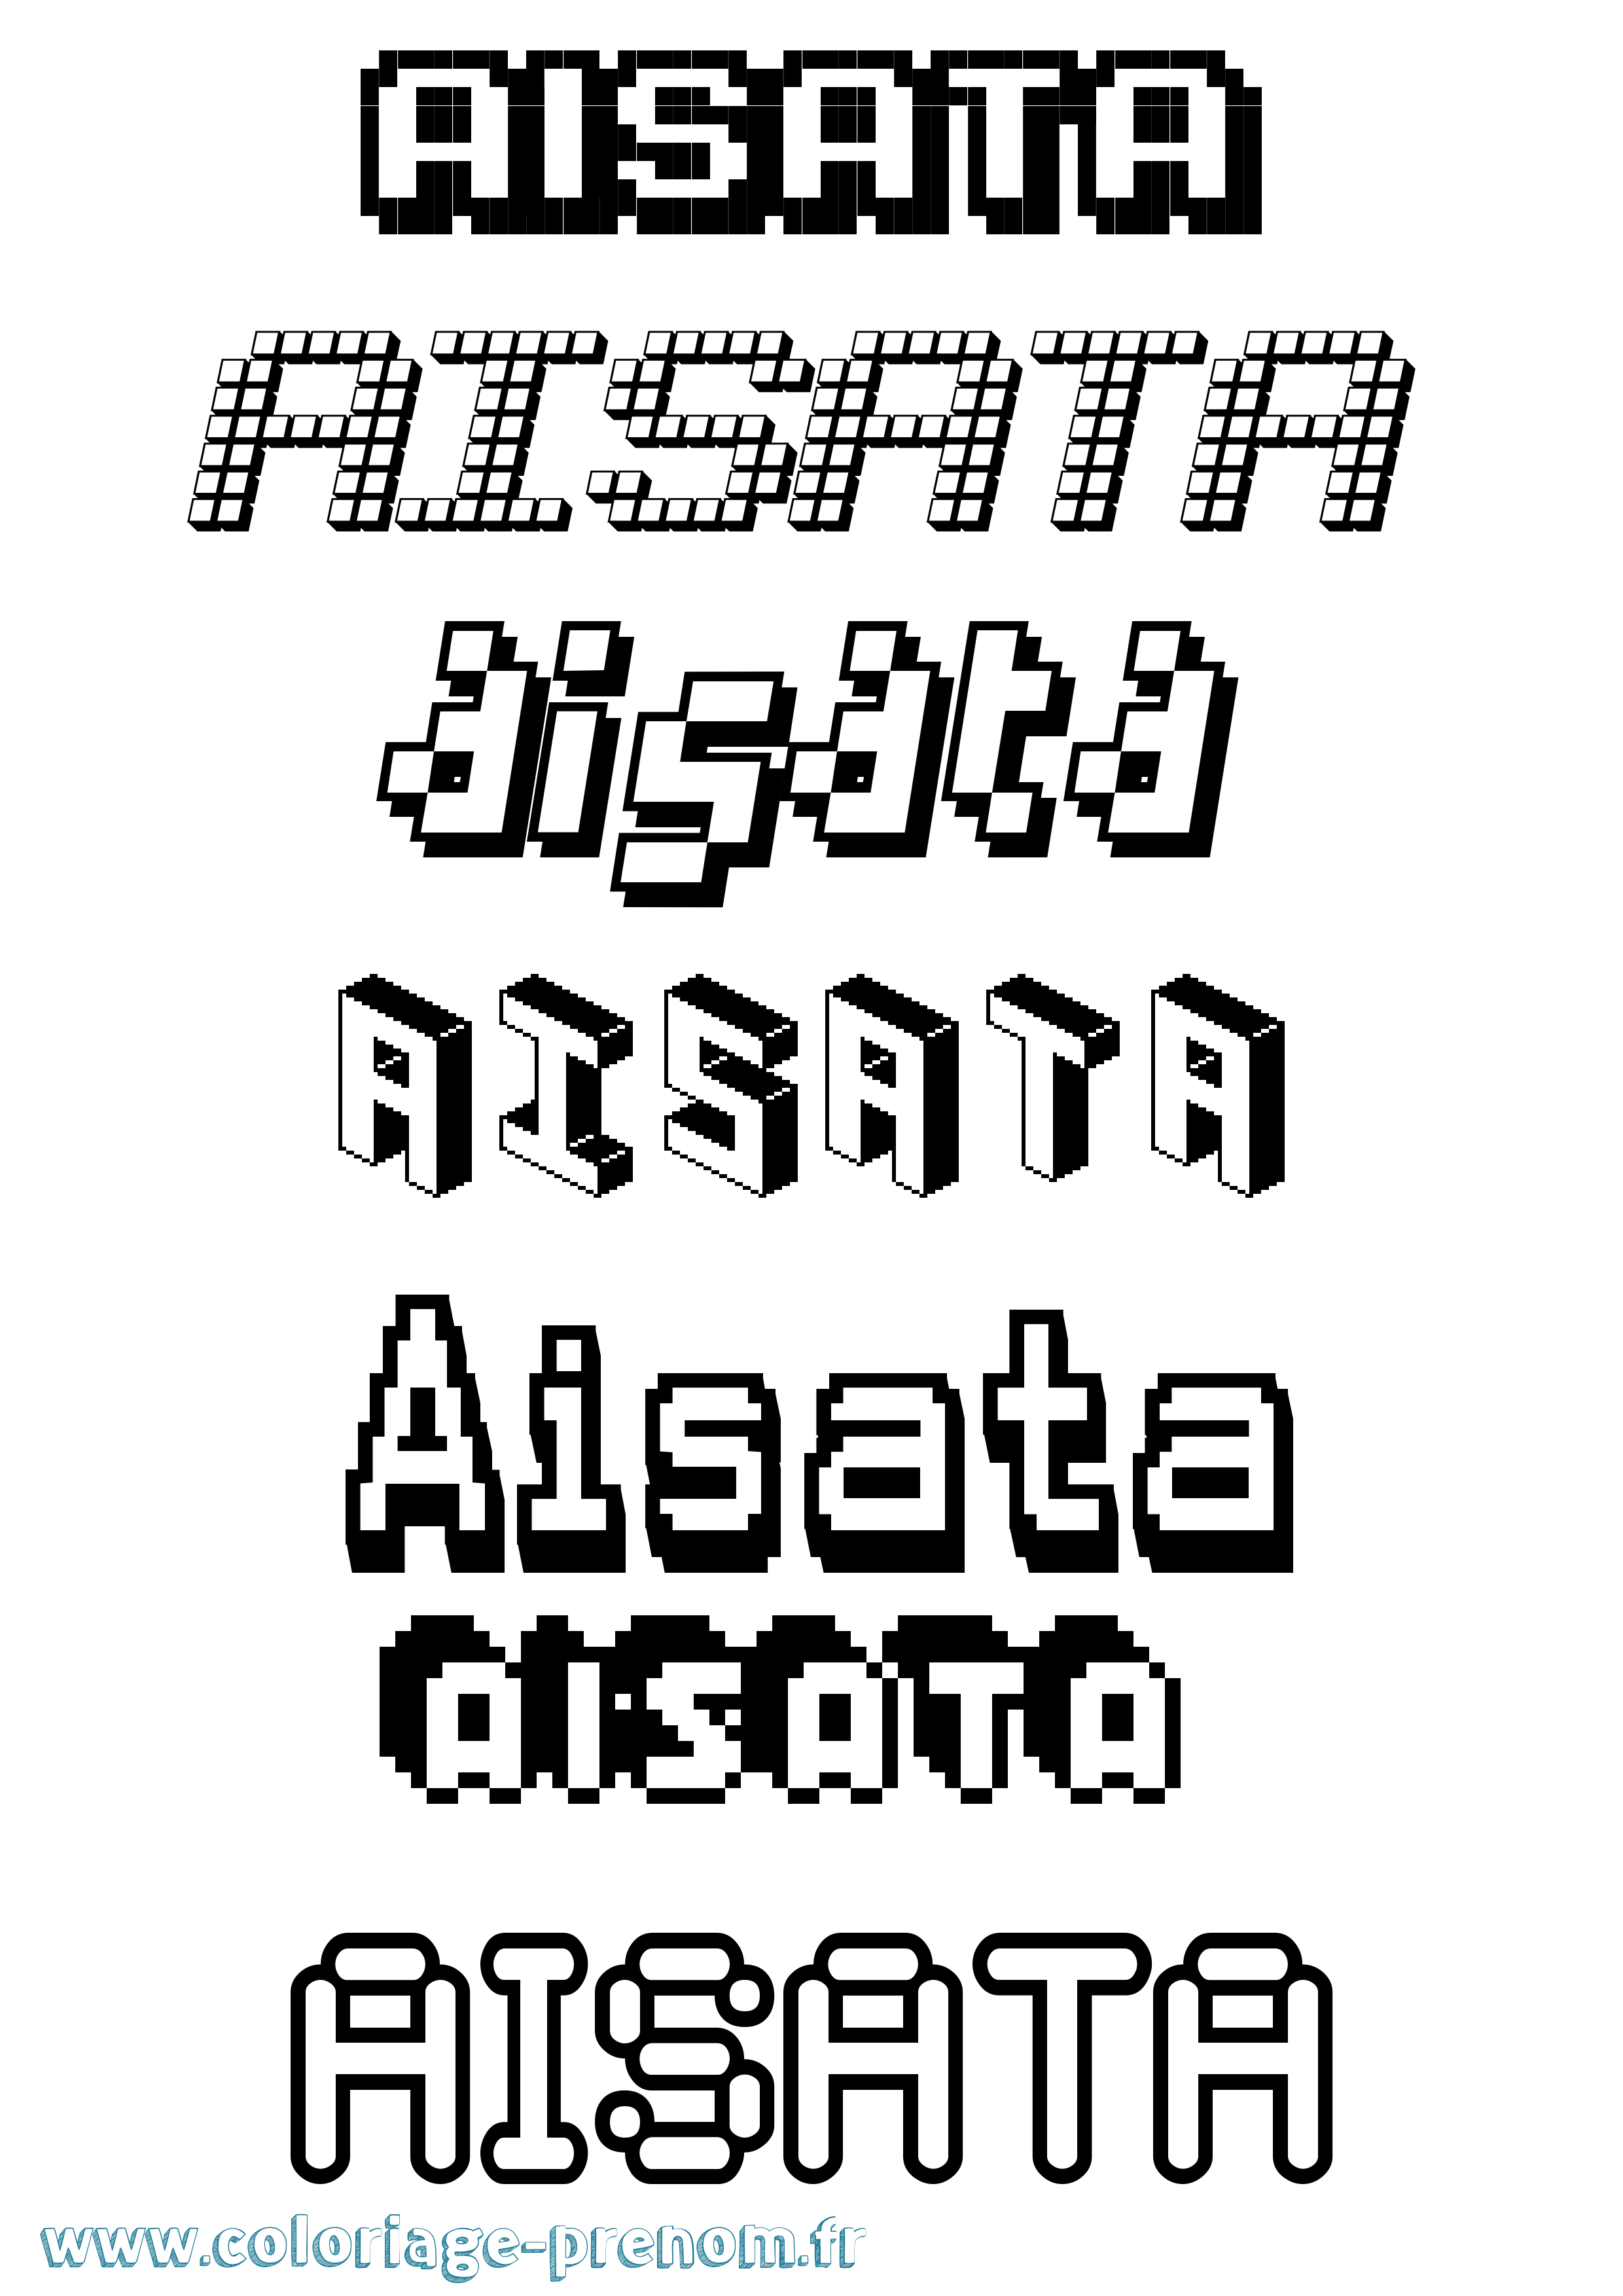 Coloriage prénom Aisata Pixel